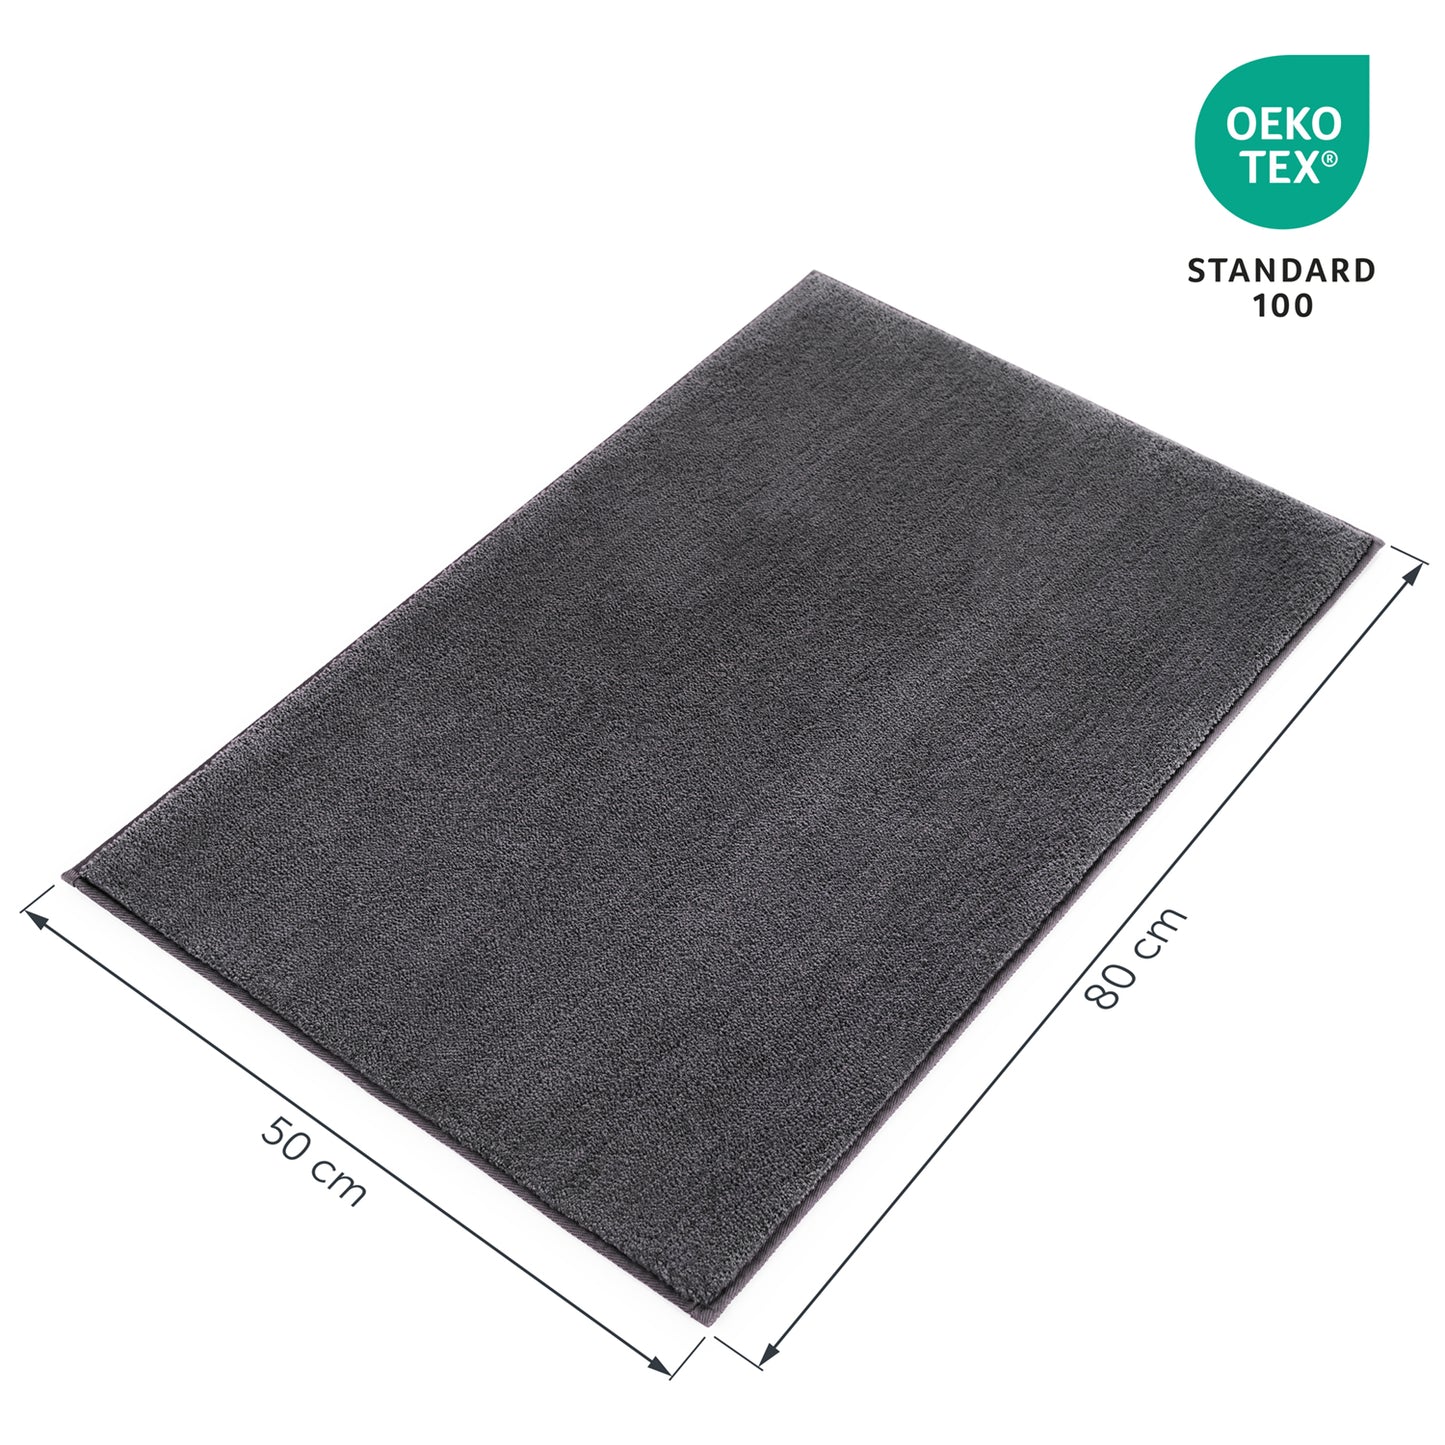 Badezimmerteppich mit Maßangaben 50 cm x 80 cm und Öko-Tex Standard 100 Siegel.